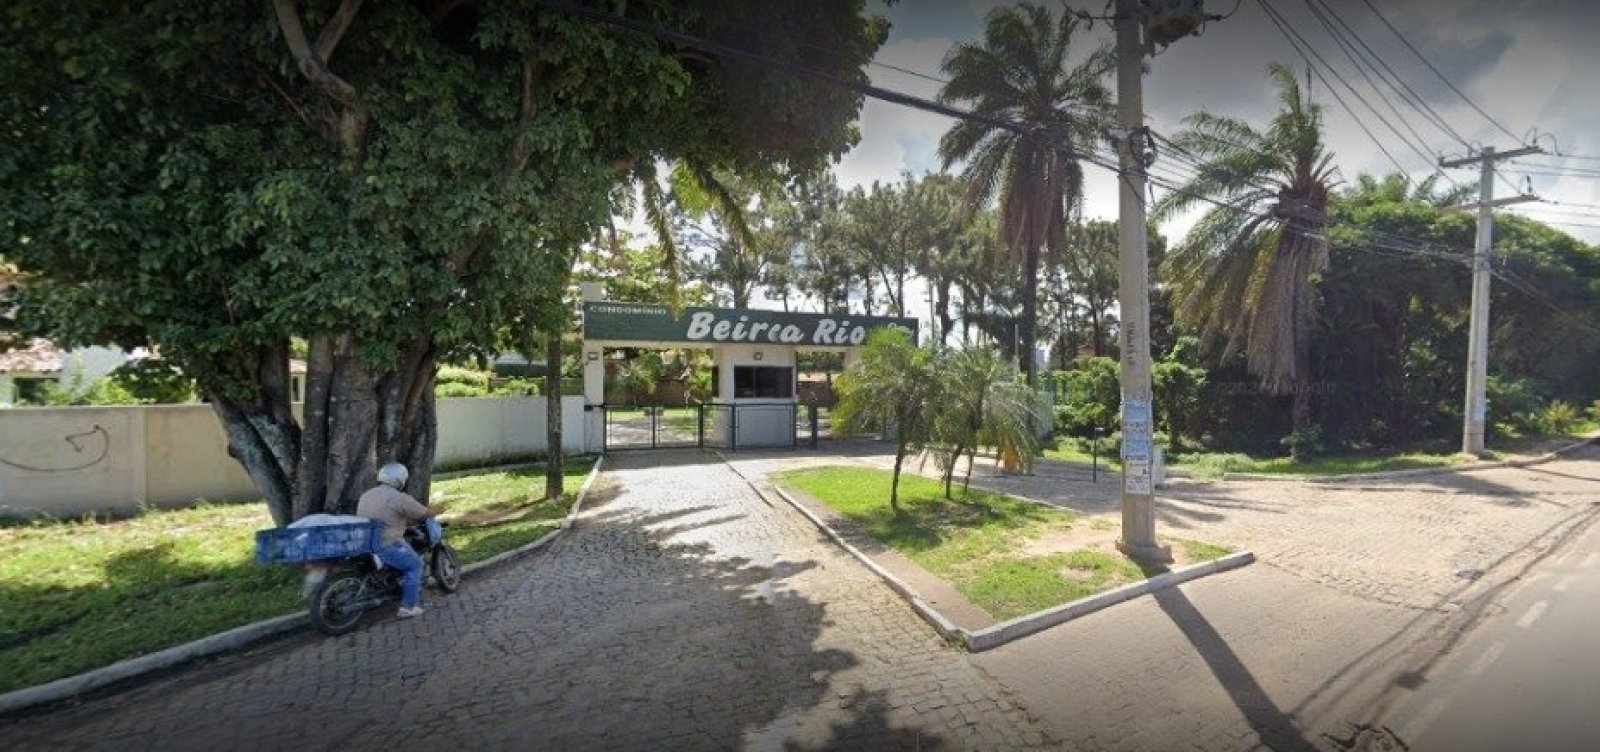 Justiça considera Condomínio Beira Rio irregular e deixa nas mãos da Prefeitura decisão de derrubar portões